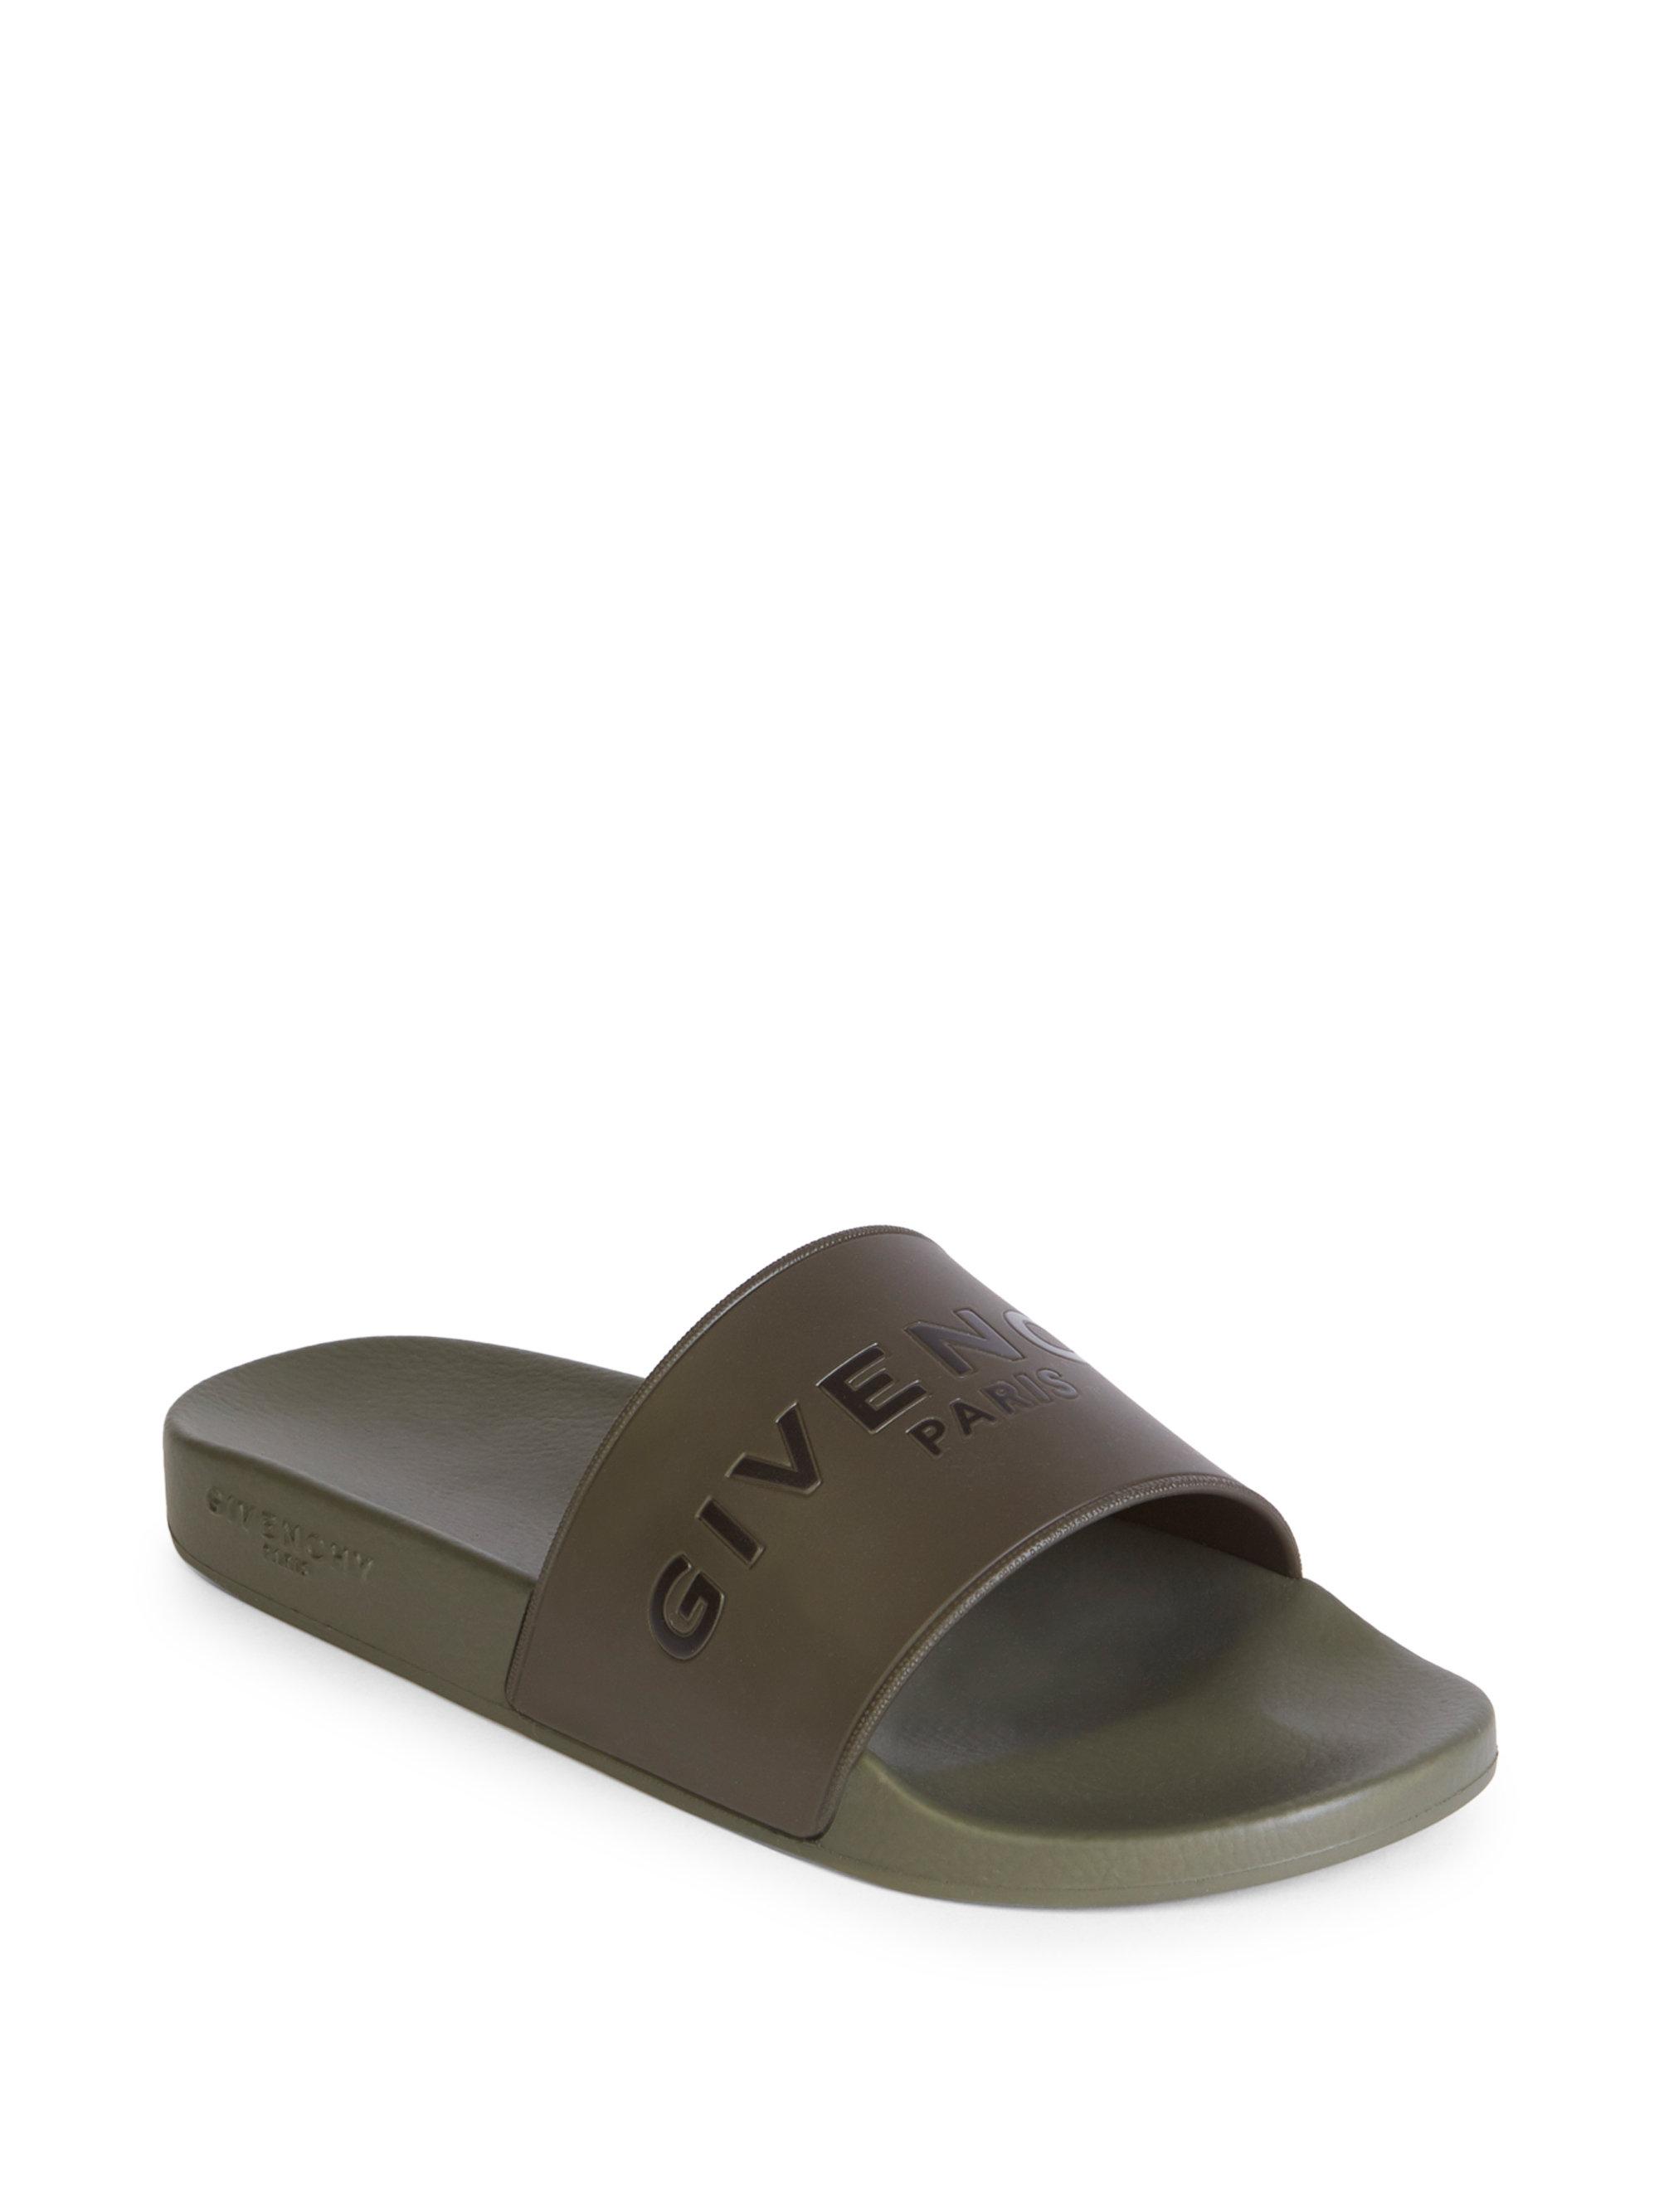 Givenchy Rubber Slide Sandals for Men - Lyst